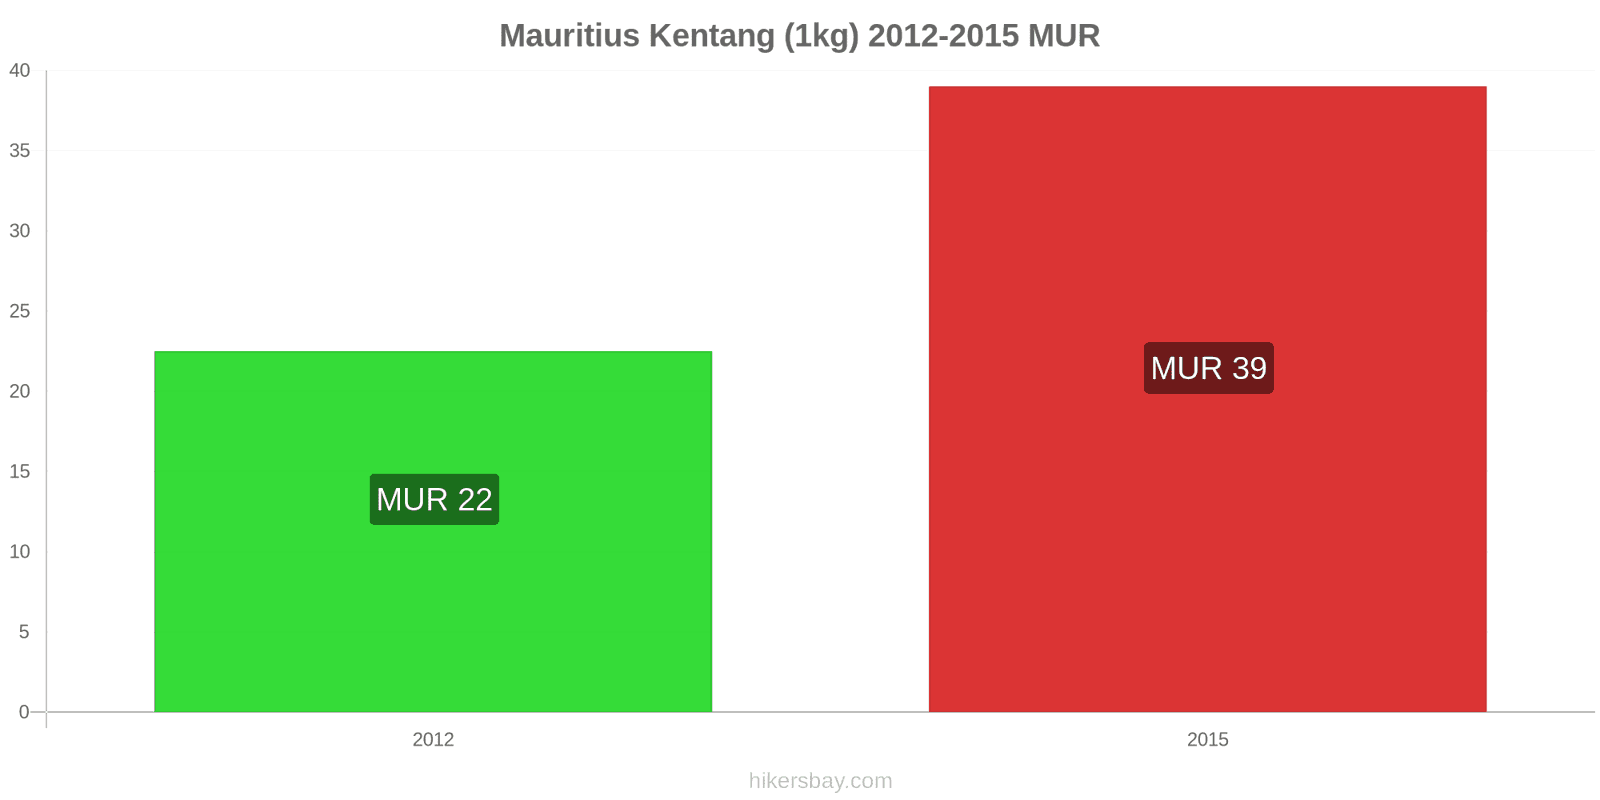 Mauritius perubahan harga Kentang (1kg) hikersbay.com